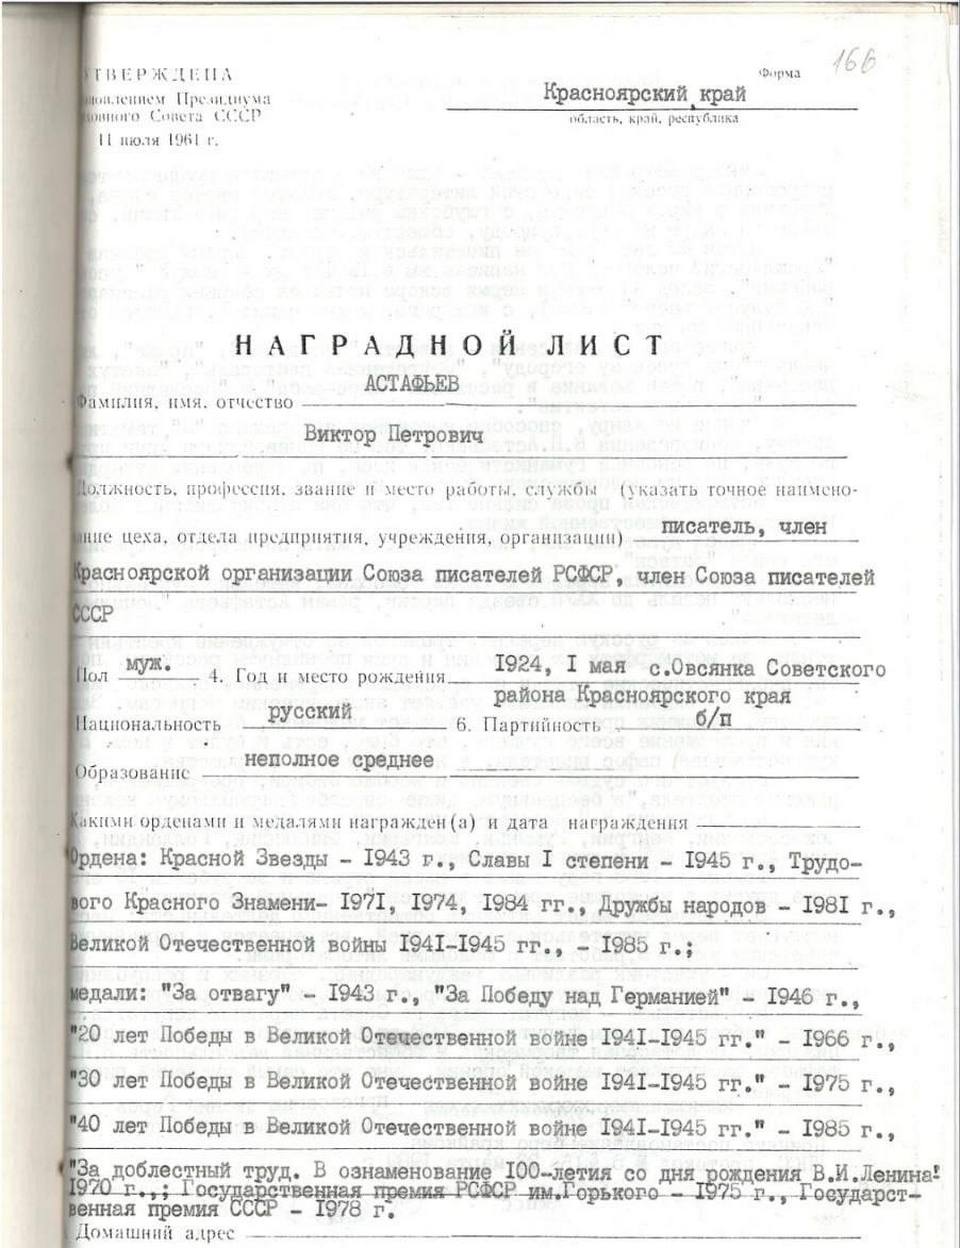 В официальных документах днем рождения Виктора Астафьева указывается 1 мая